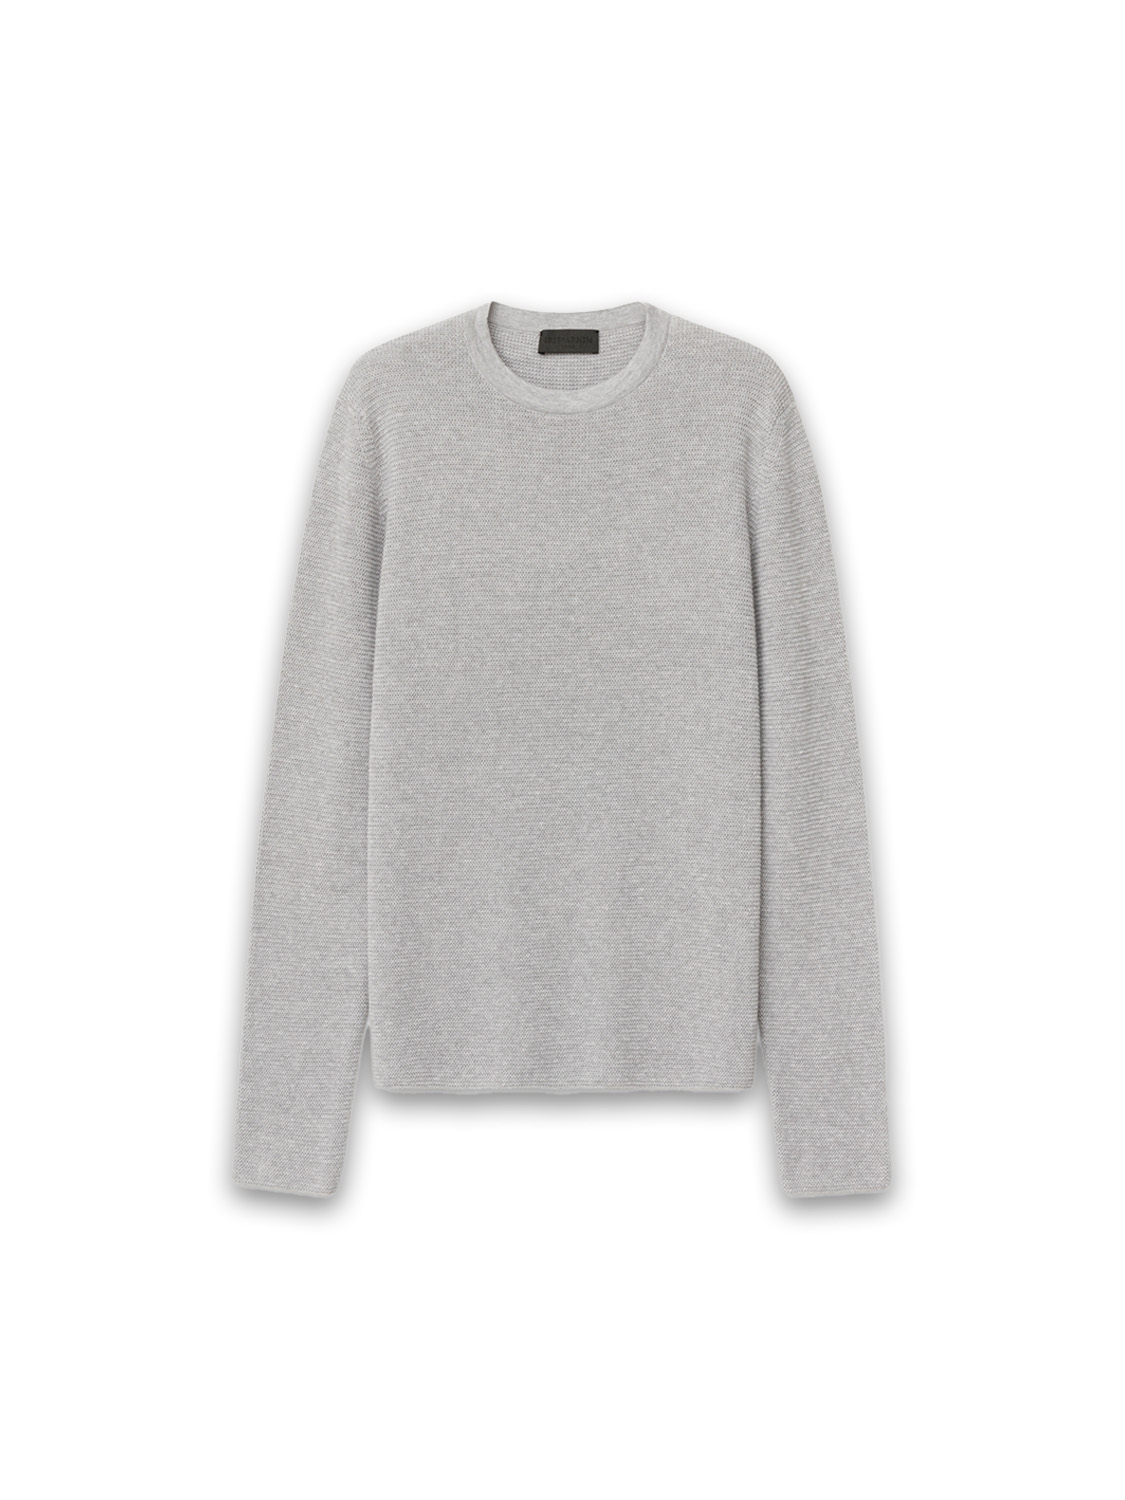 Primo – cotton sweater 